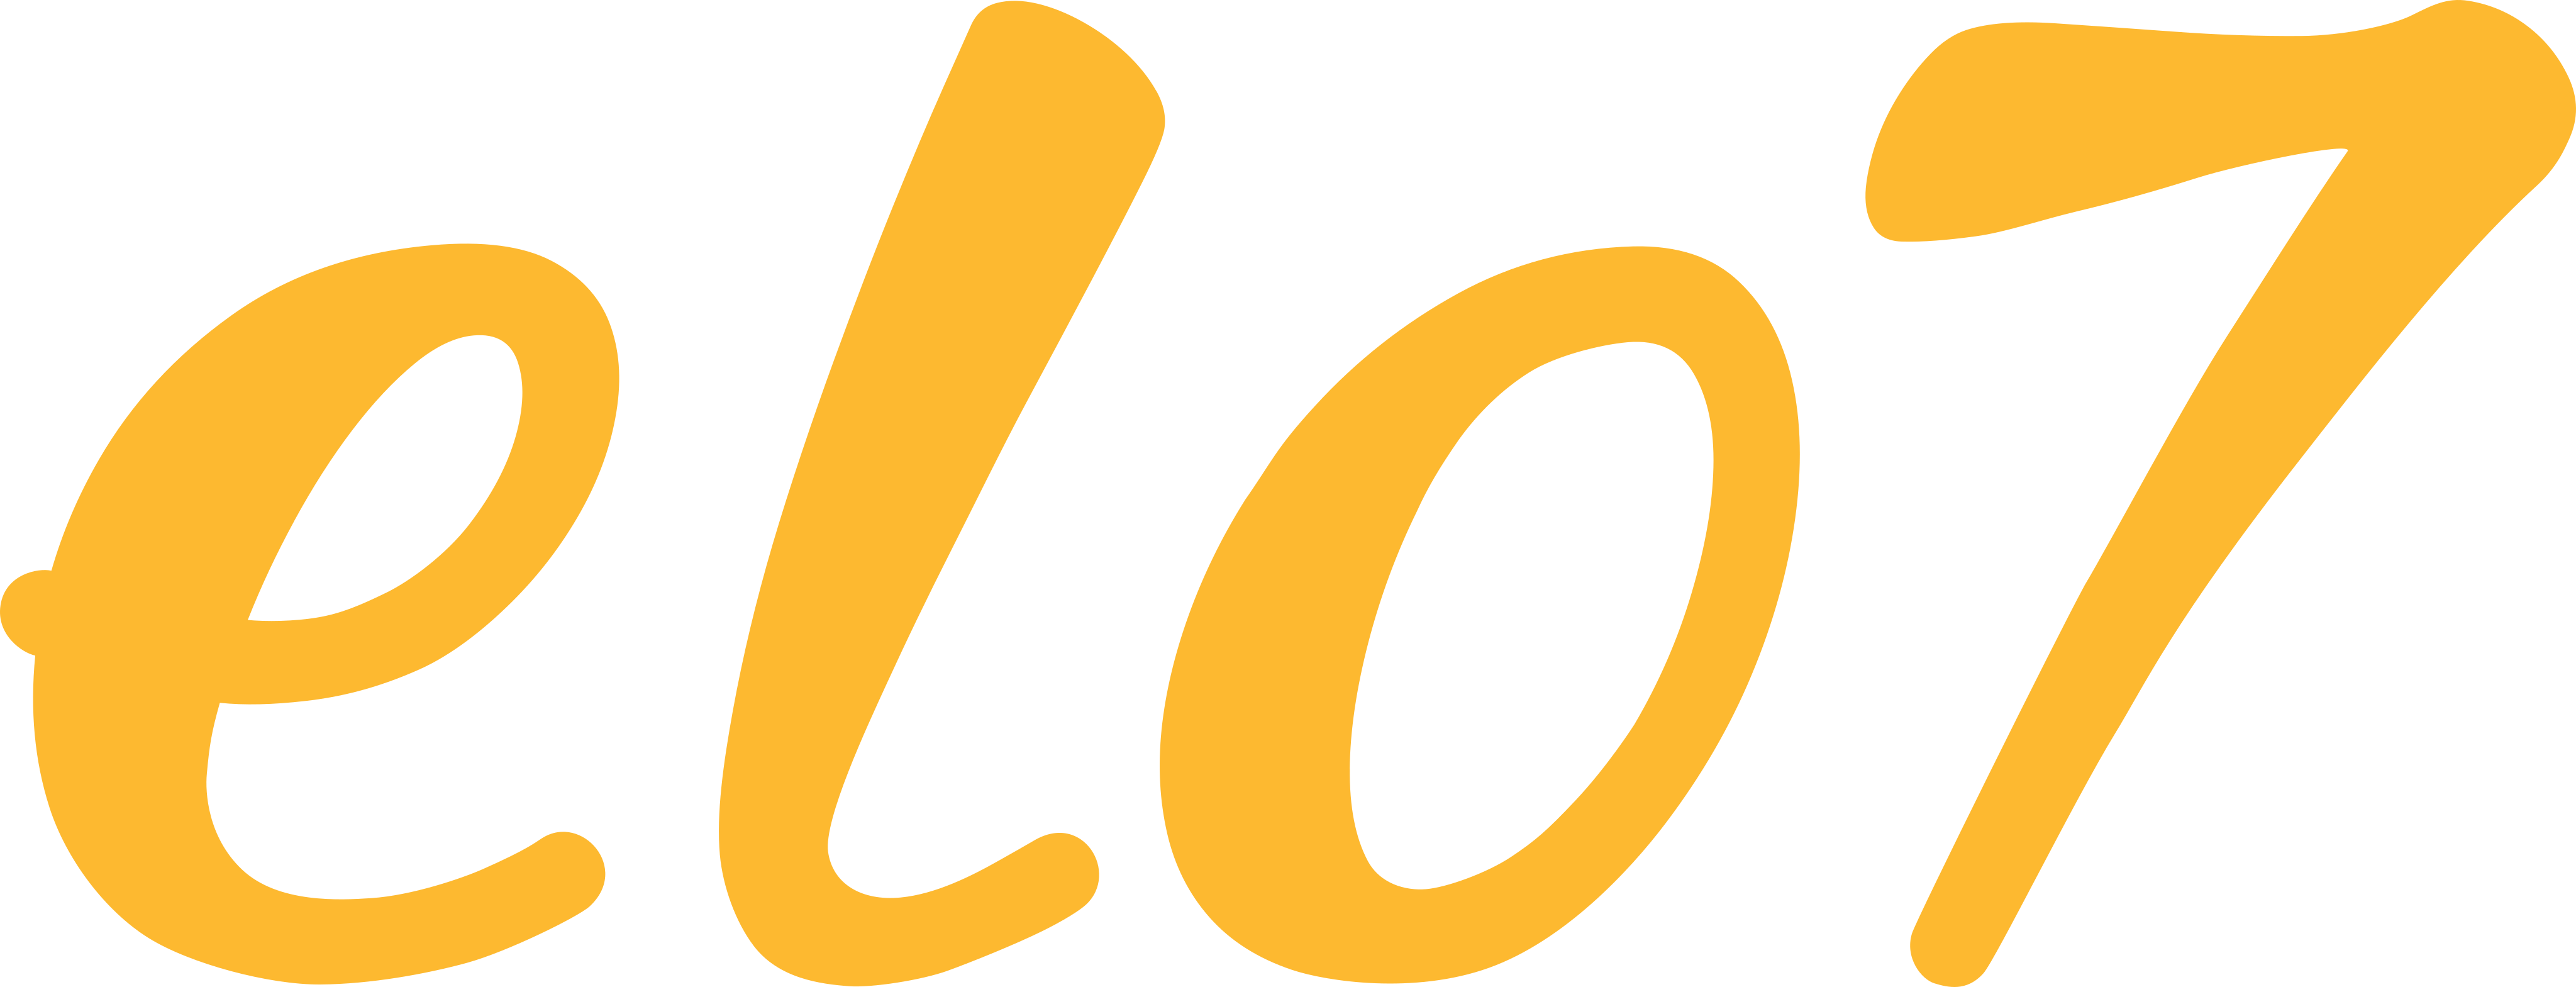 logotipo elo7